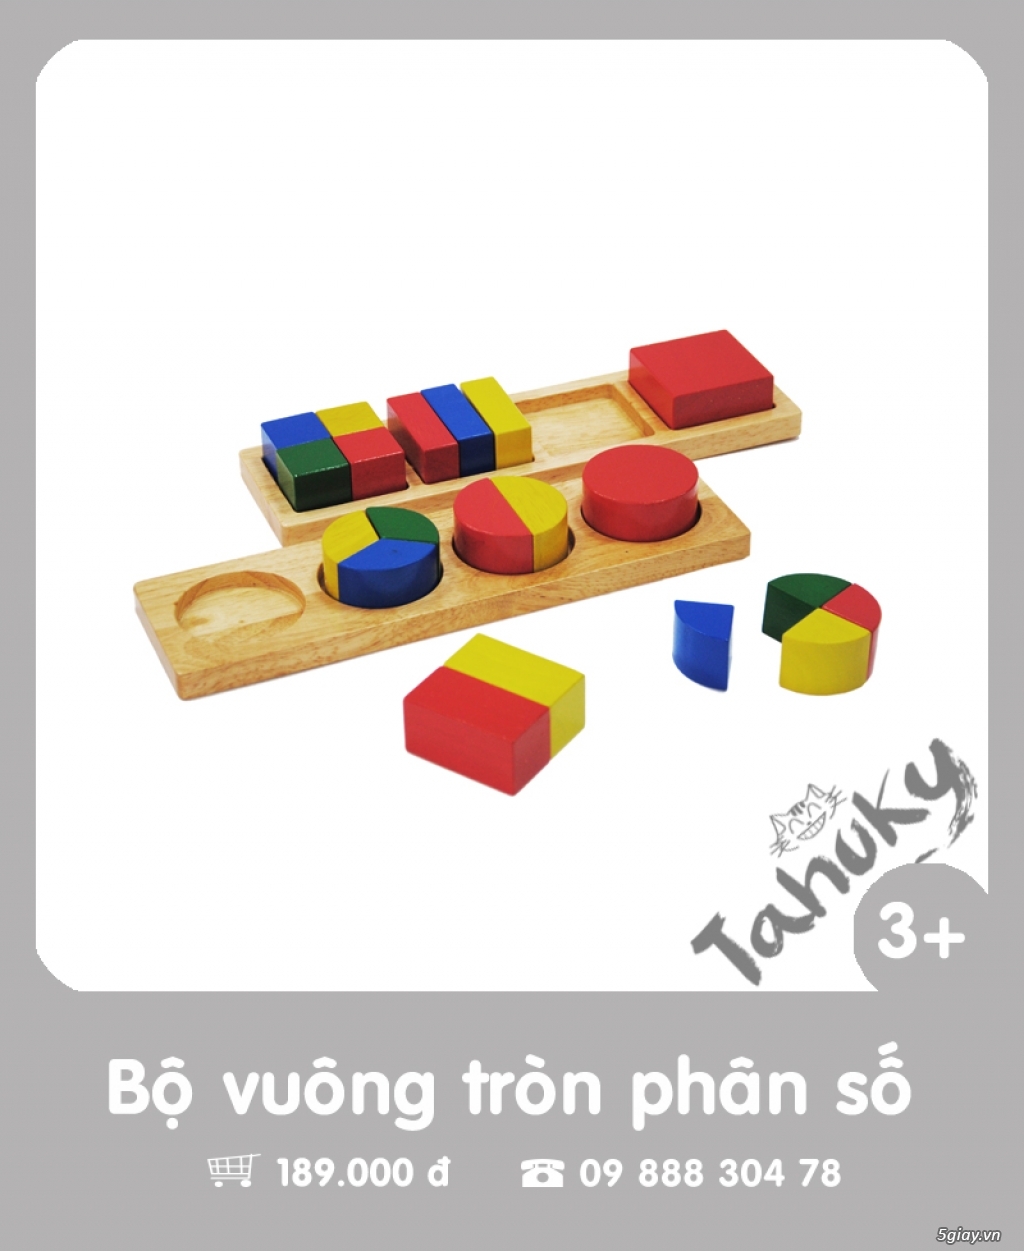 Đồ chơi gỗ an toàn Tahuky (dành cho bé từ 3-5 tuổi) - 3